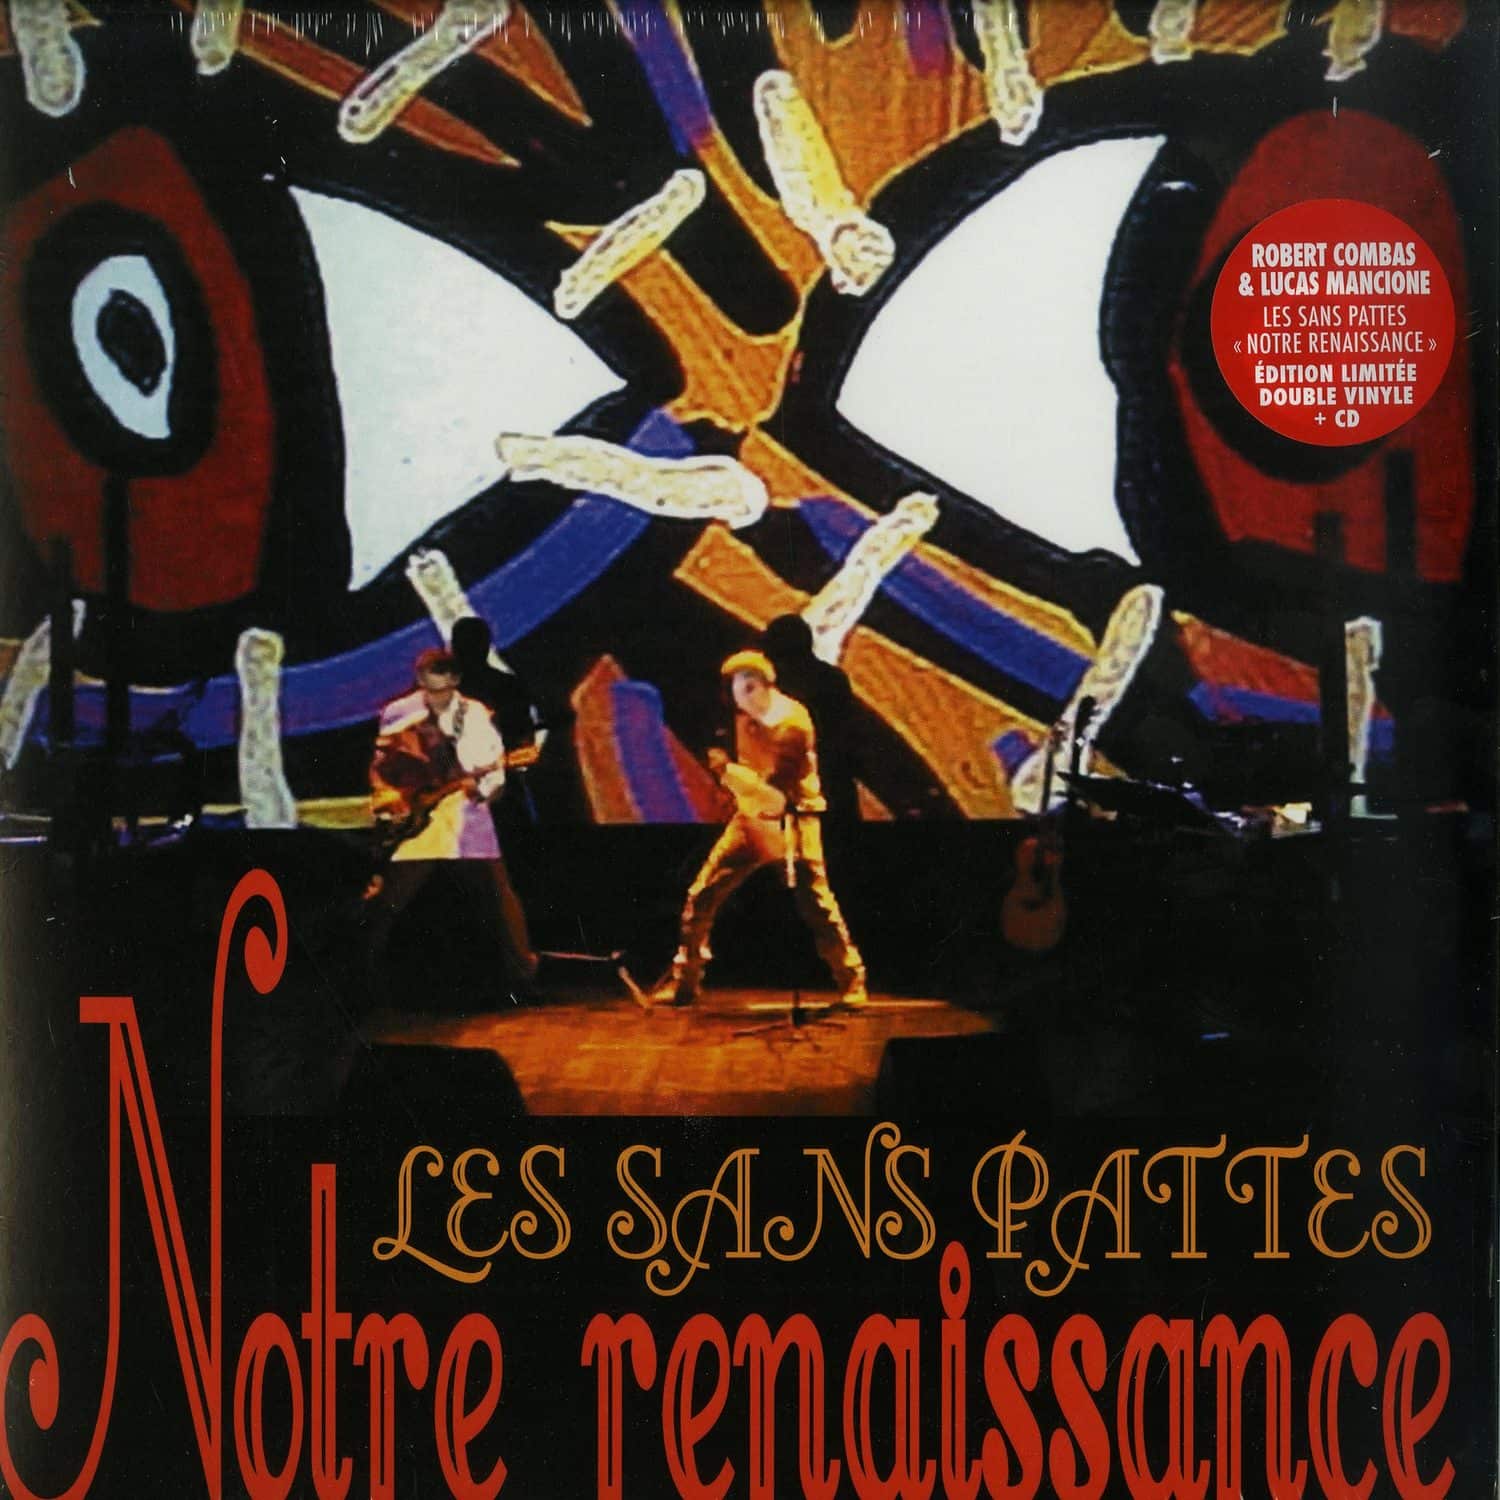 Les Sans Pattes - NOTRE RENAISSANCE 